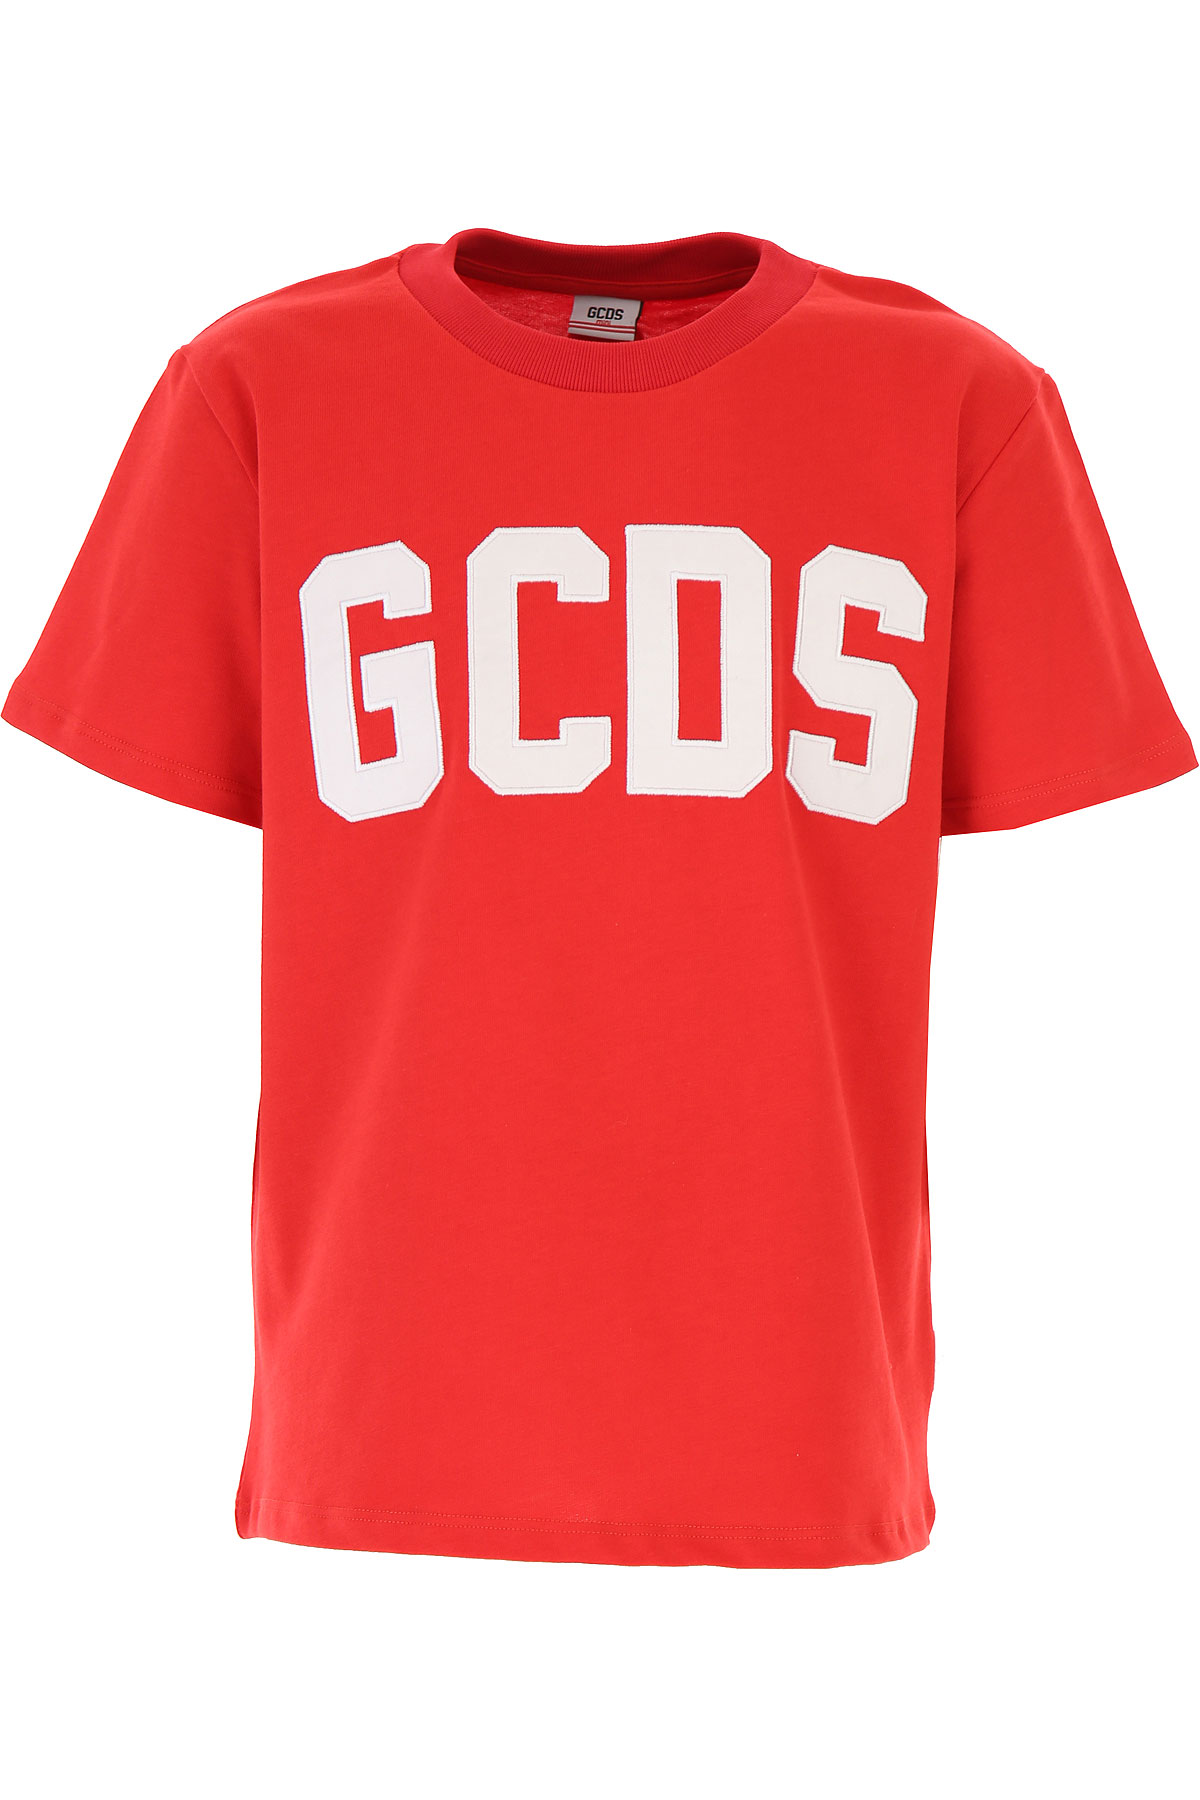 GCDS Kinder T-Shirt für Jungen Günstig im Sale, Rot, Baumwolle, 2017, 10Y 12Y 6Y 8Y